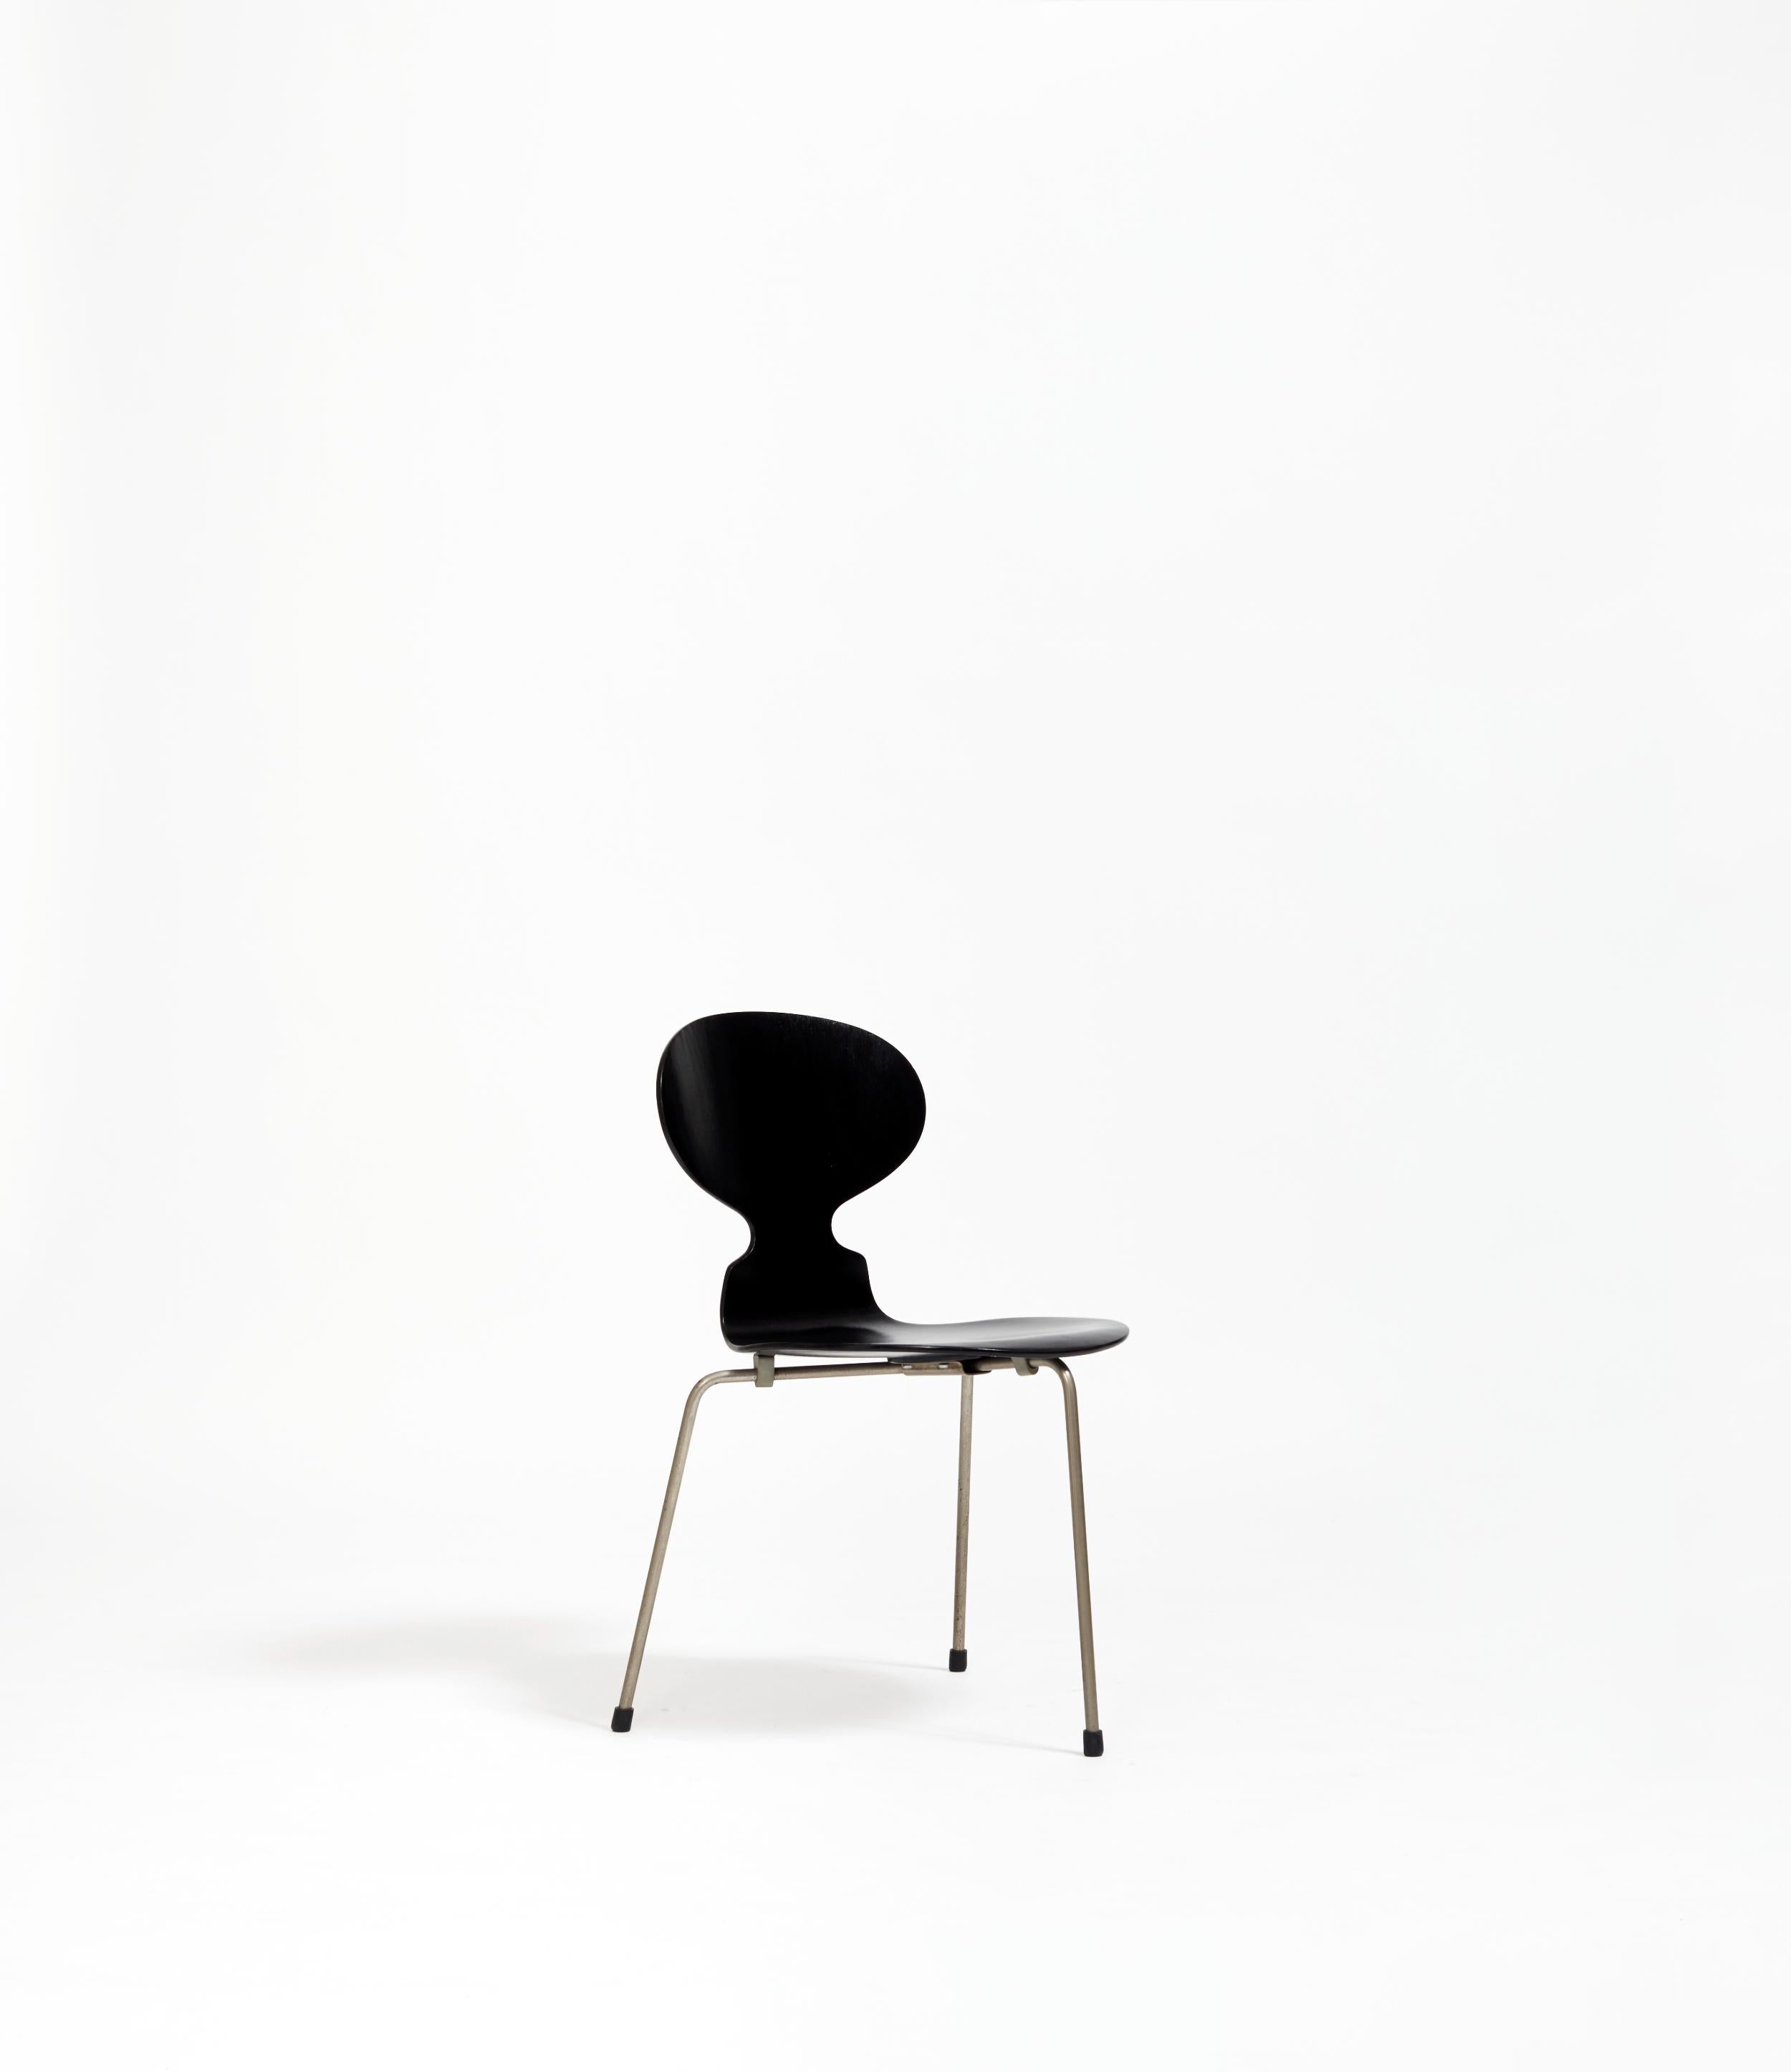 Qualifiée de révolutionnaire et de rebelle, la chaise Fourmi dévoilée en 1952 a donné lieu à de nombreux malentendus sur l'utilisation du biomimétisme esthétique dans l'environnement domestique, le corps d'une fourmi étant évoqué dans la structure